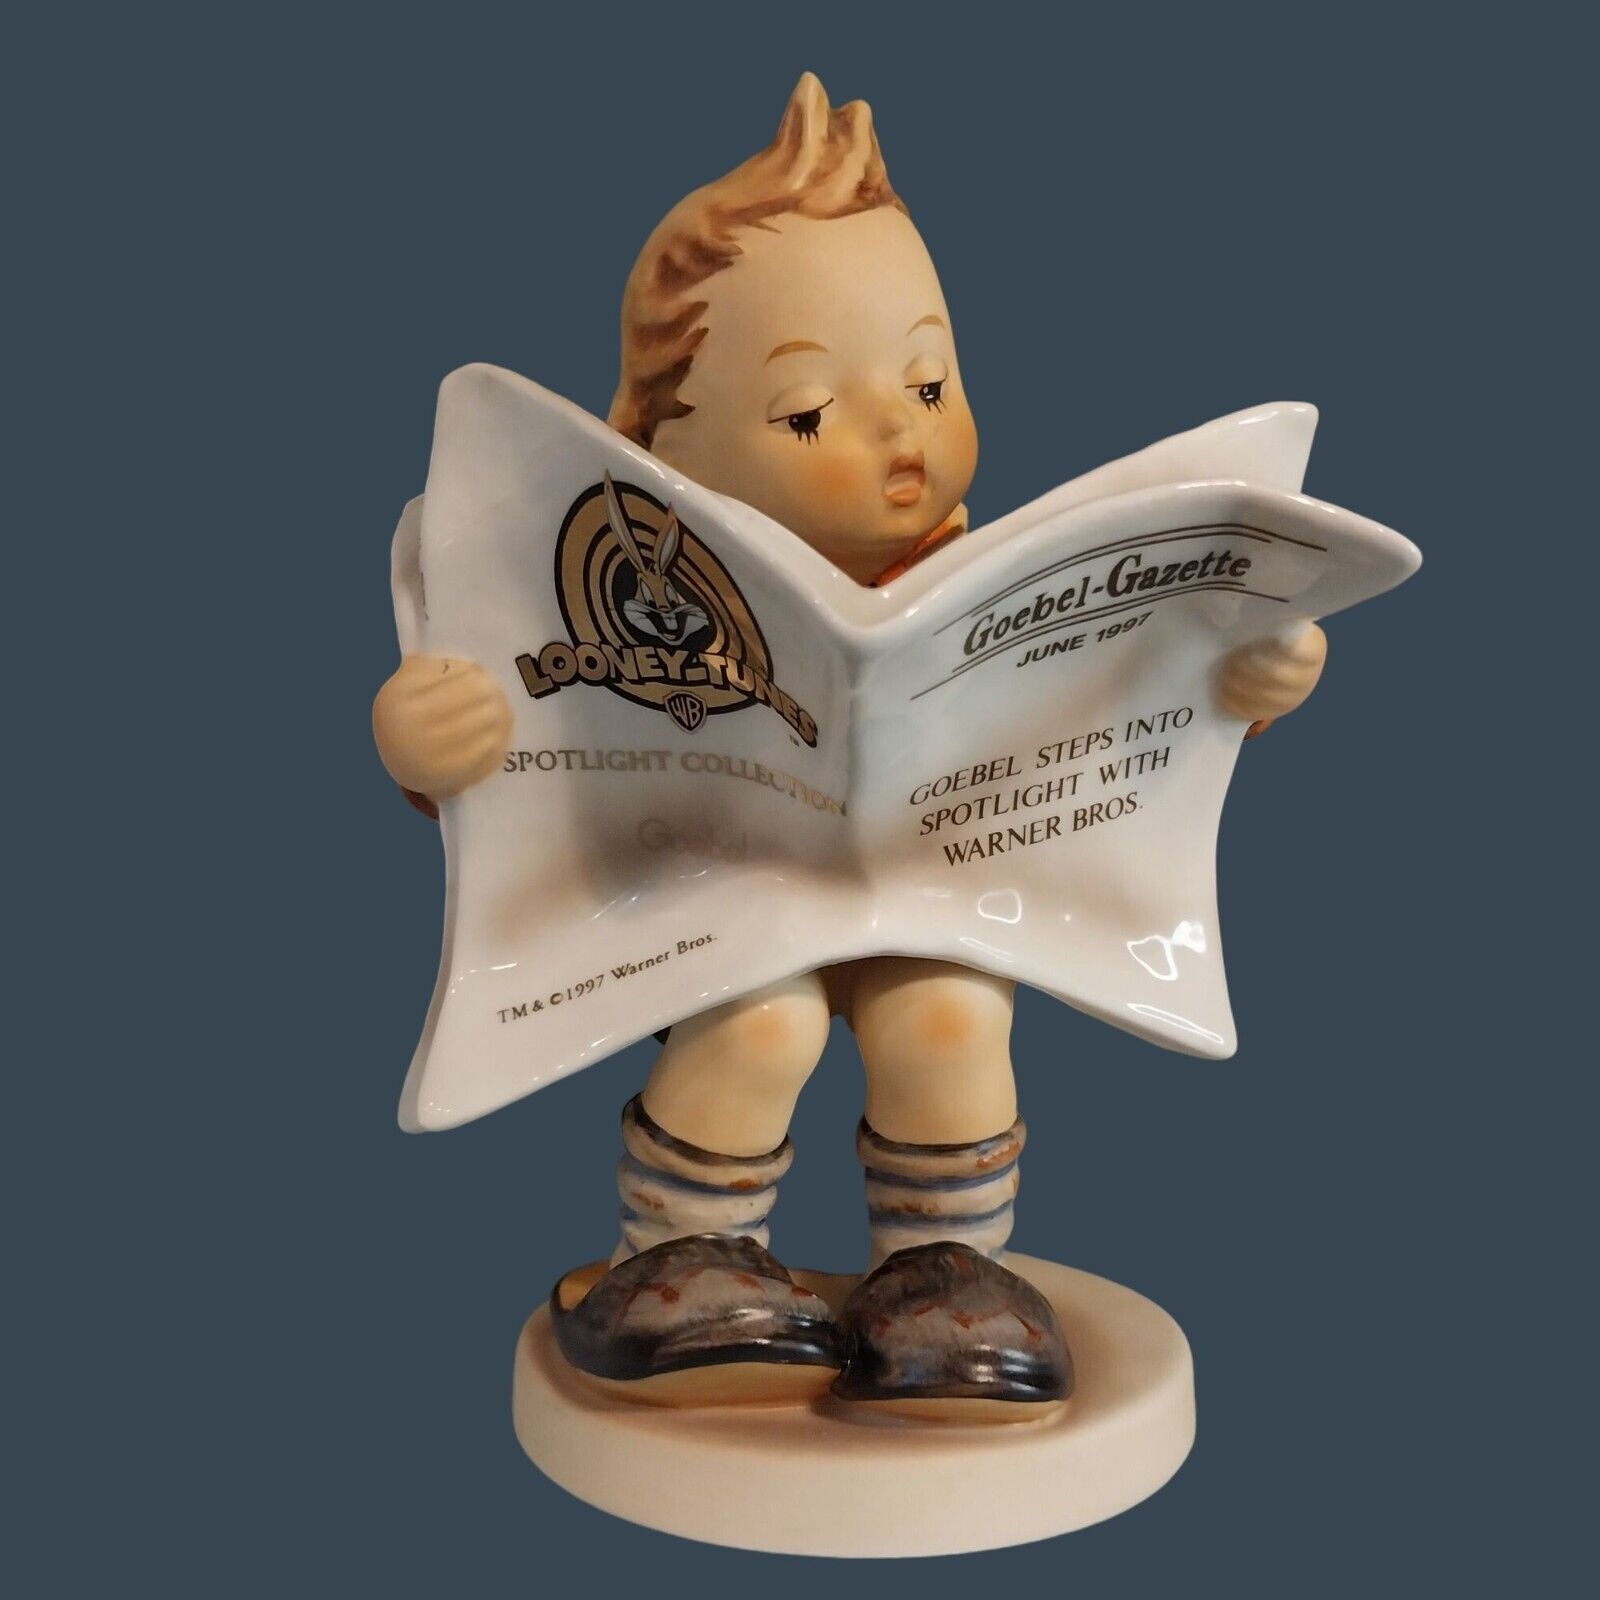 Hummel Figurine Latest News Looney Toons Goebel